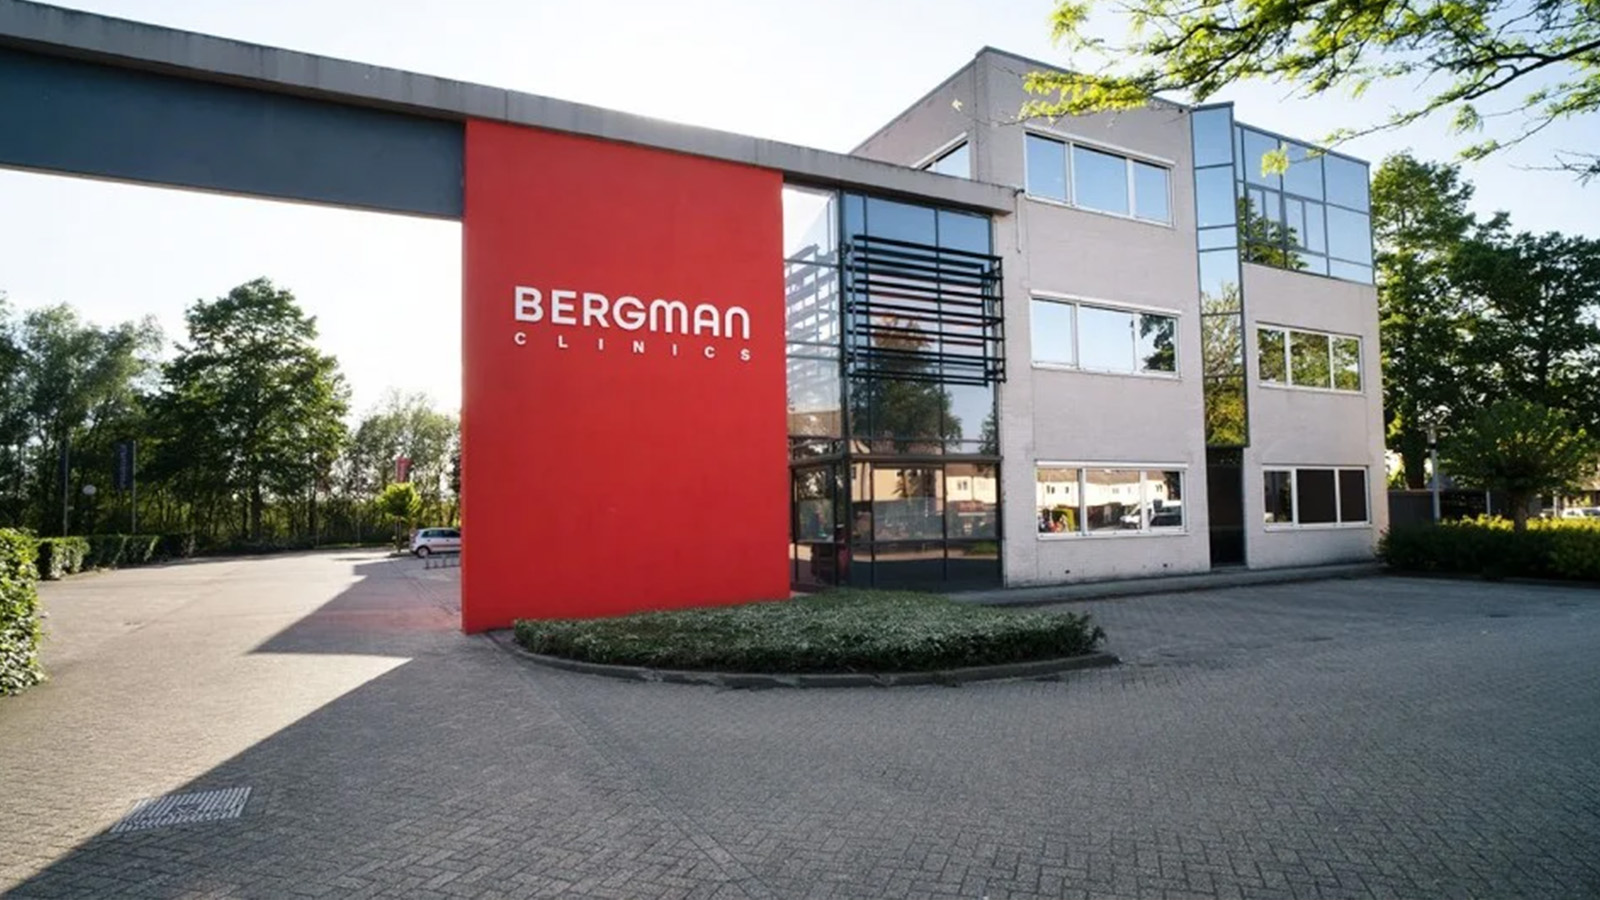 Bergman Clinics' vacancies